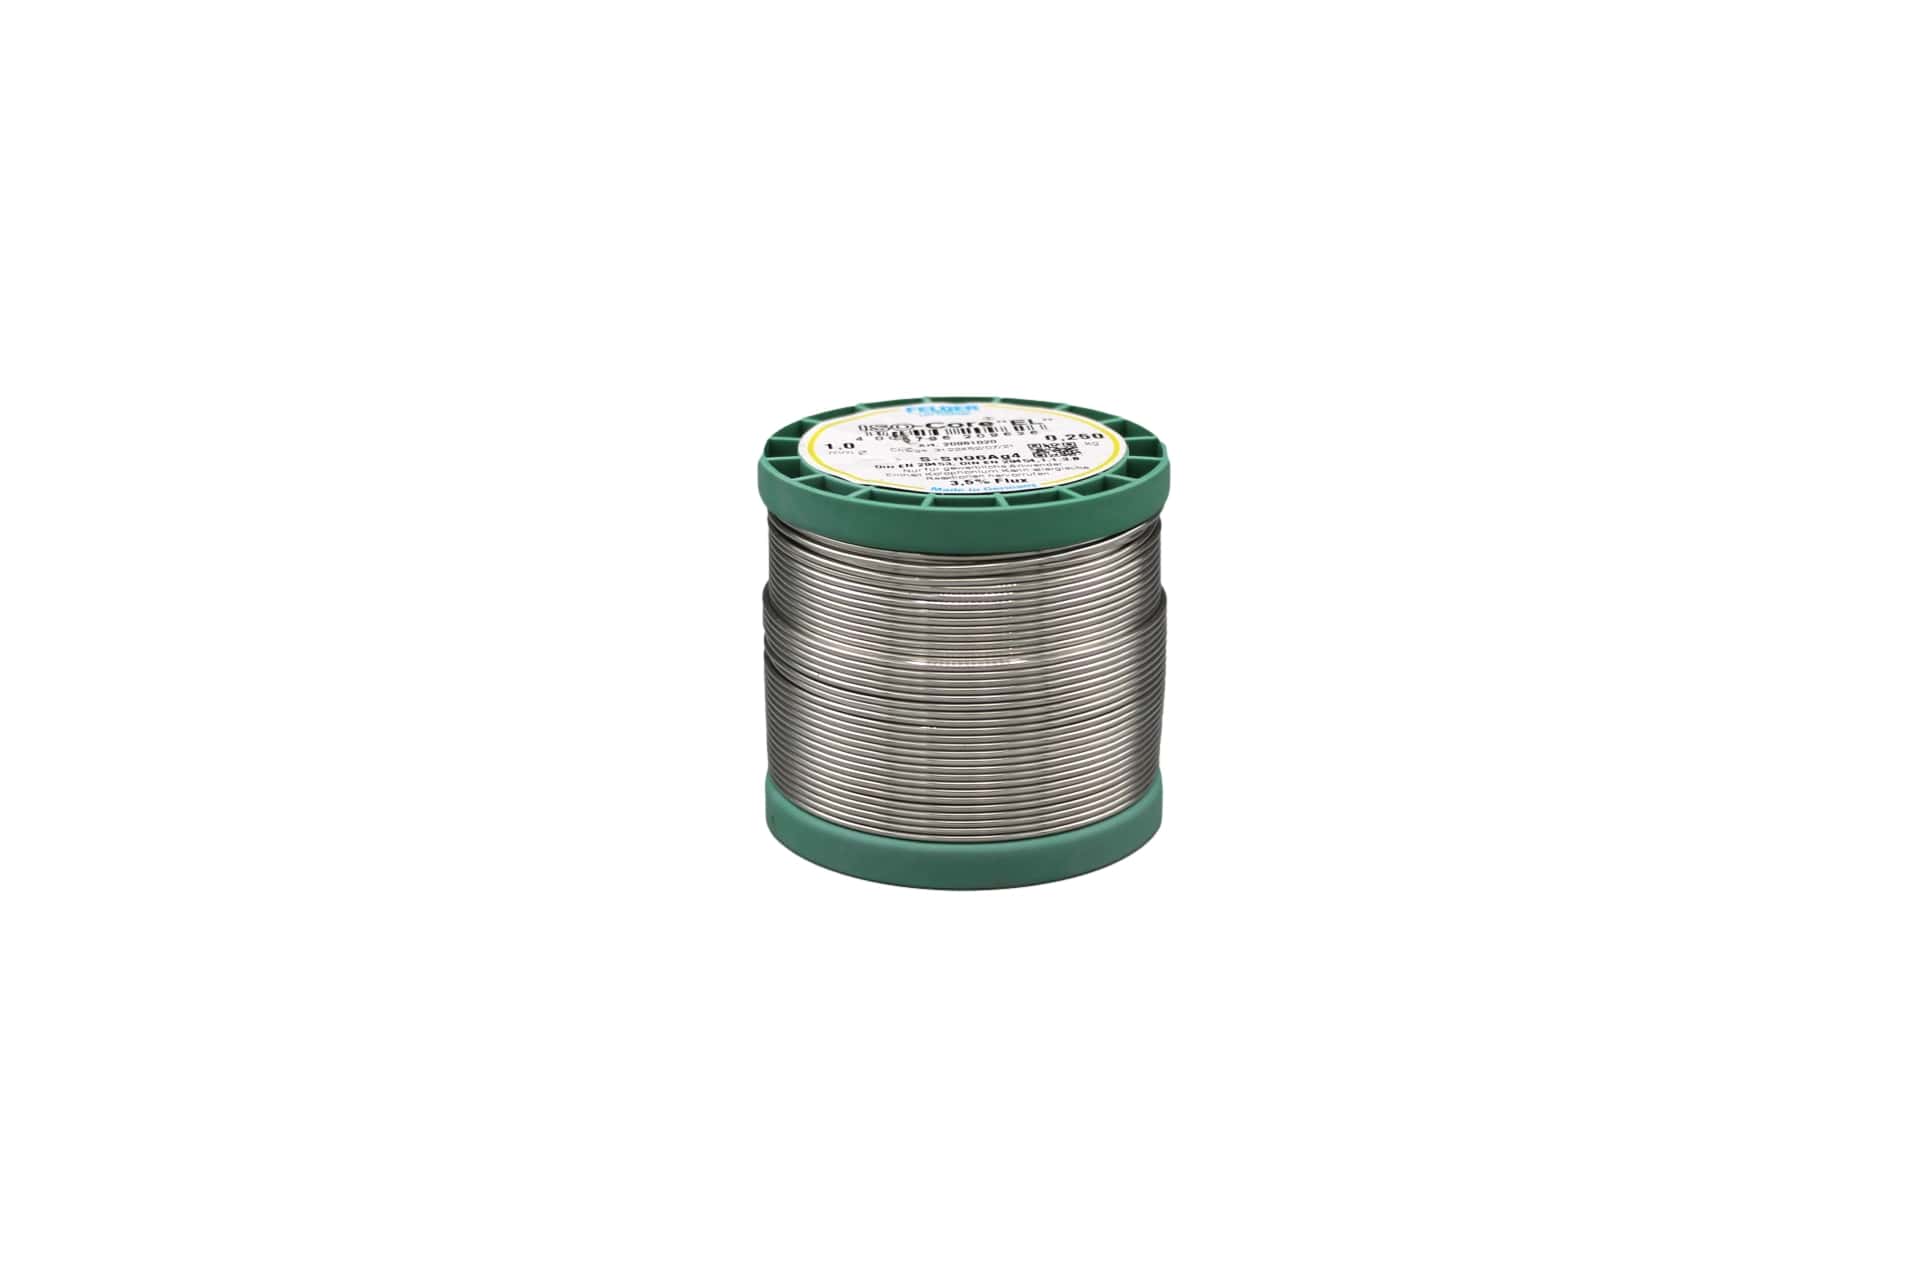 20961020 Felder solder wire, no-clean, lead-free, Sn96Ag4, 1 mm, 250g, roll